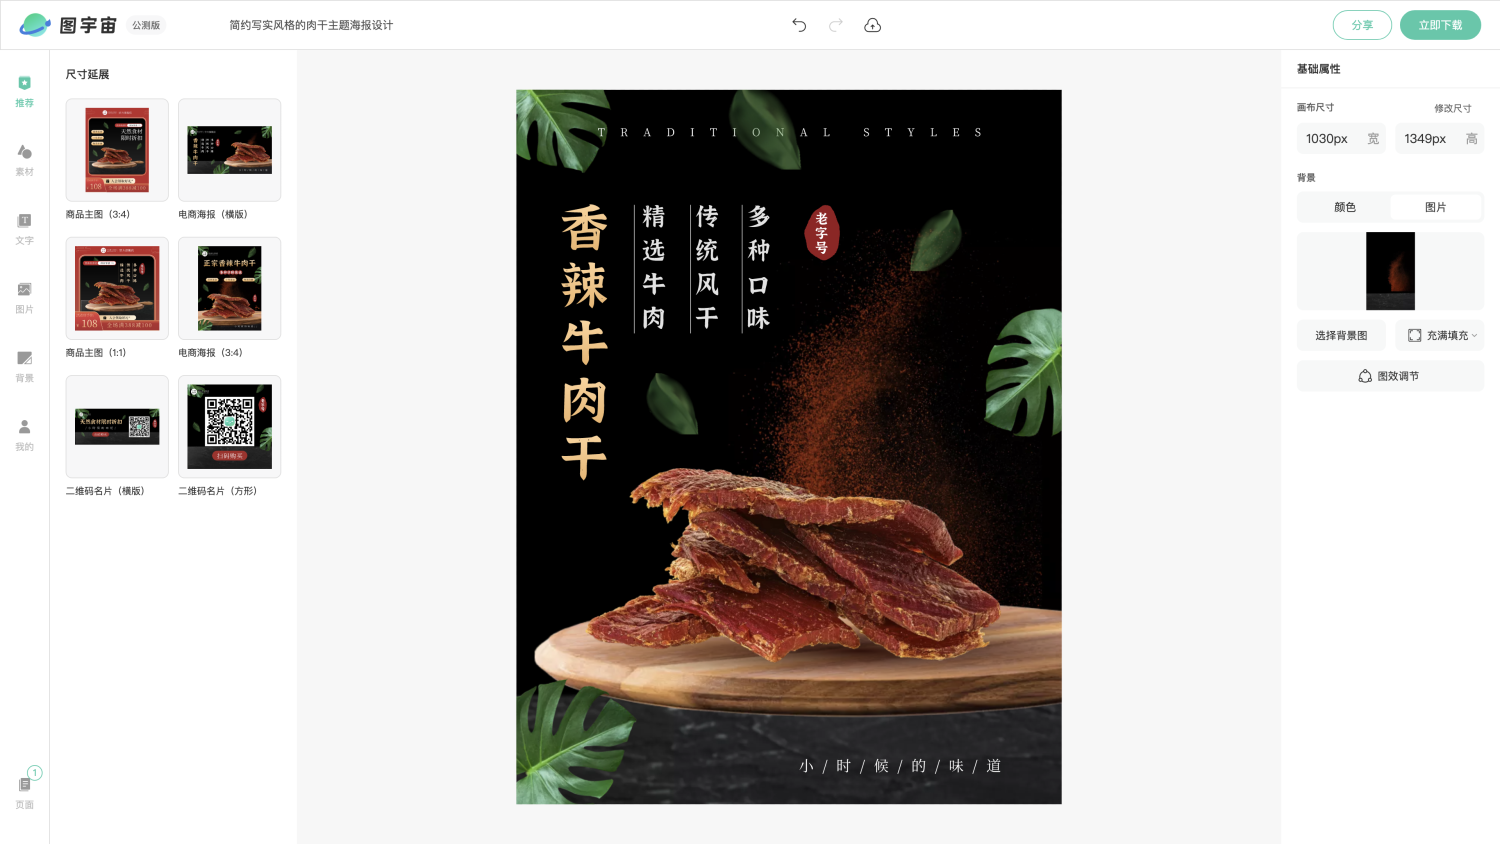 图宇宙-编辑器-简约写实风格的肉干主题海报设计